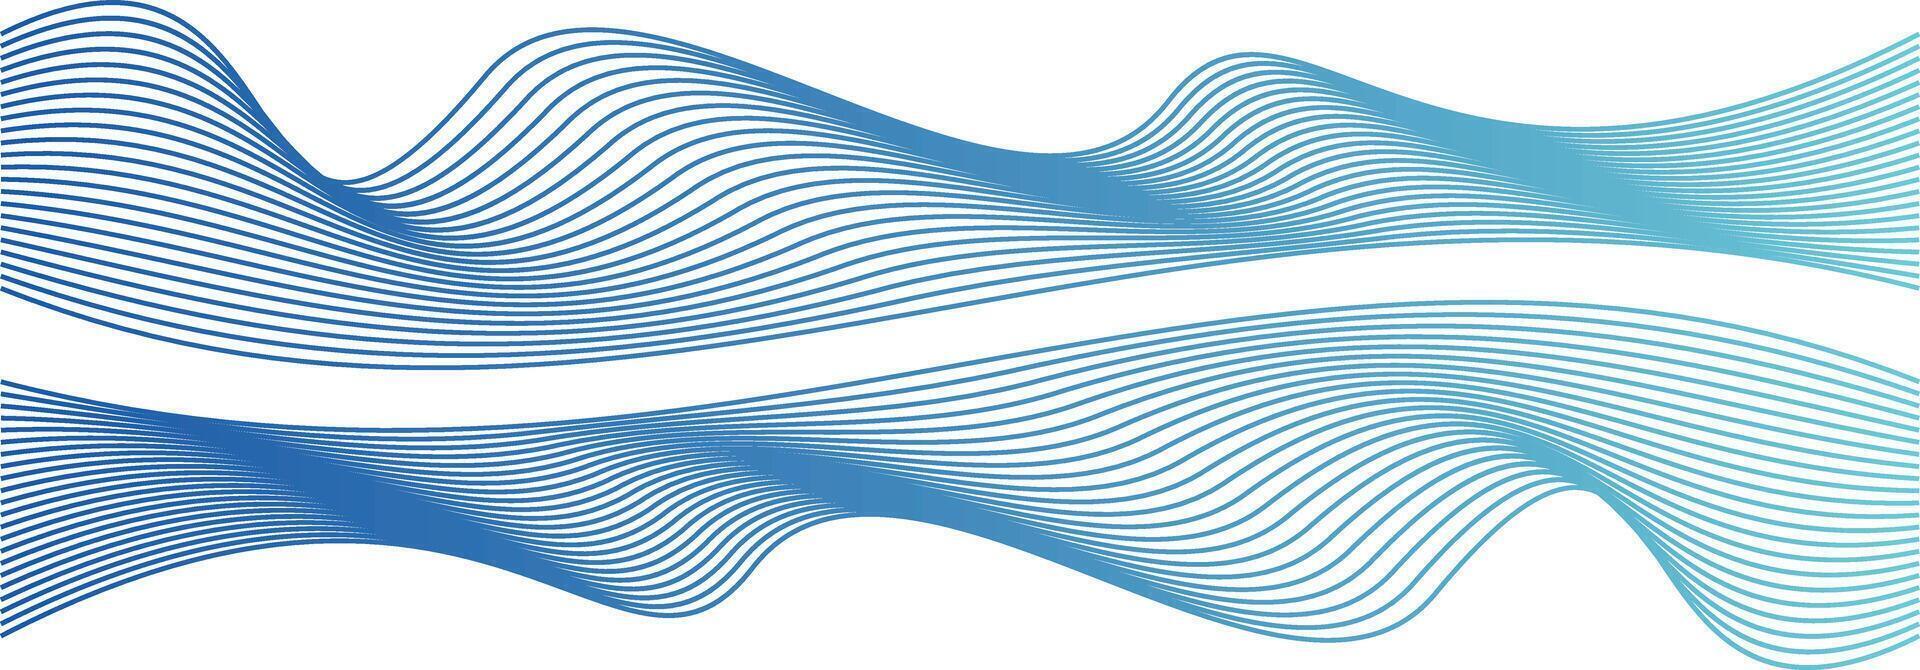 Welle Linie bunt abstrakt Vektor Element